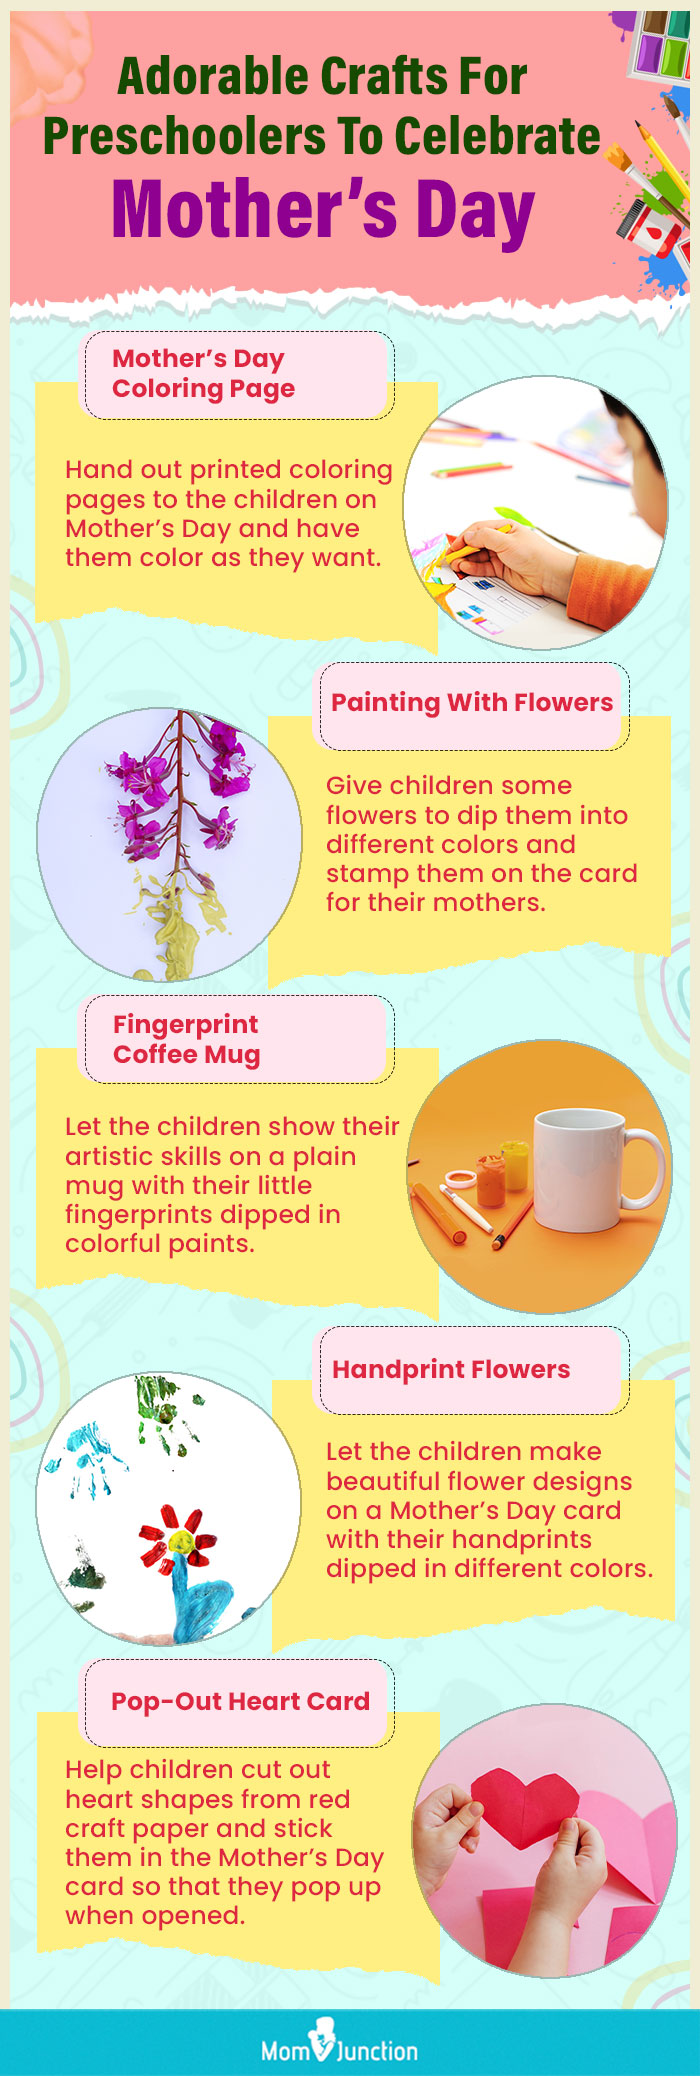 为学龄前儿童准备的可爱手工艺庆祝母亲节(信息图)